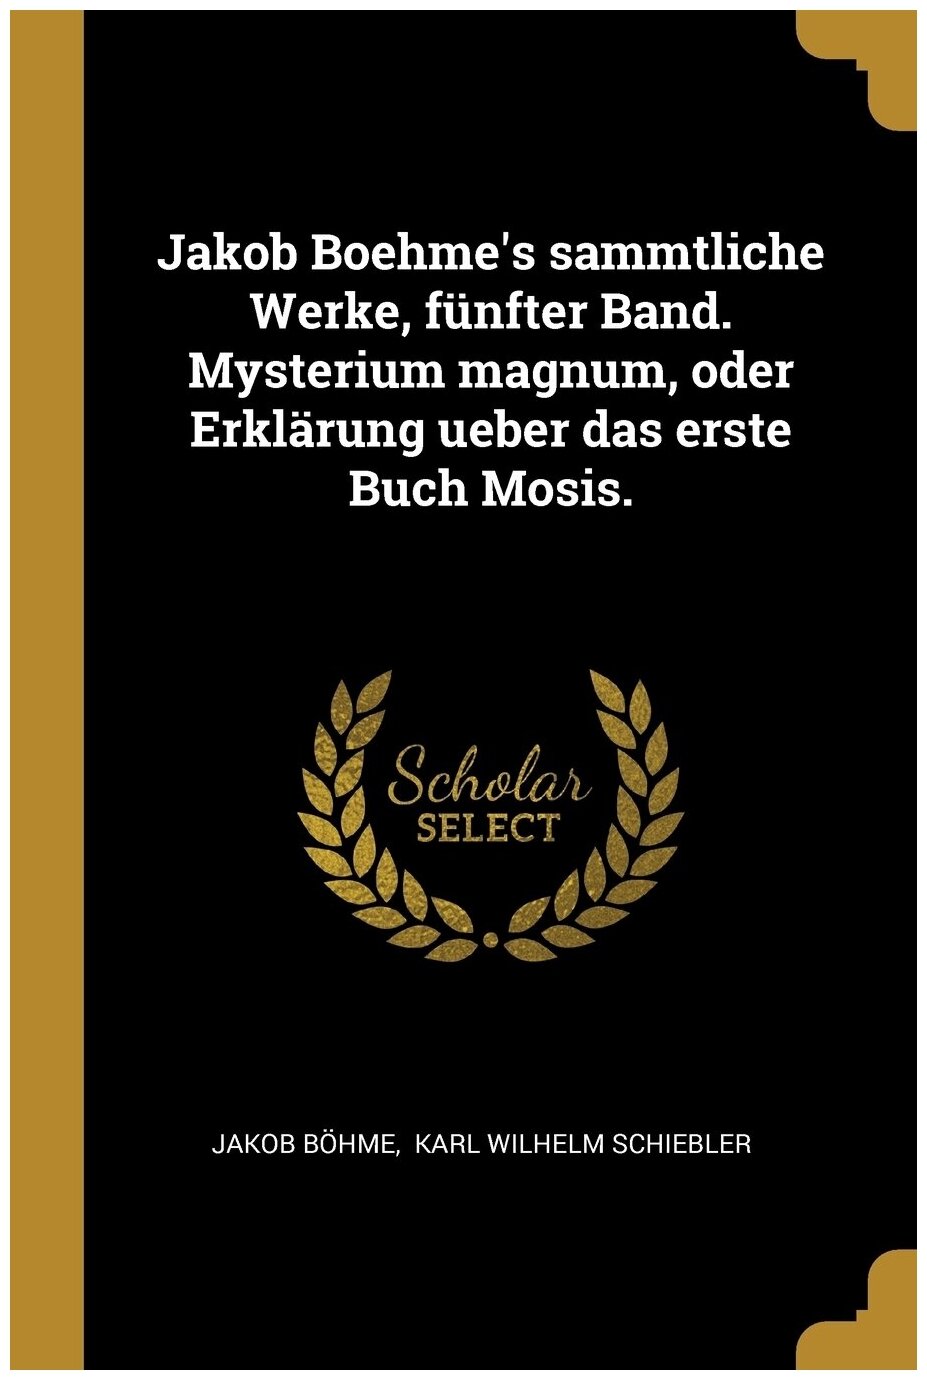 Jakob Boehme's sammtliche Werke, fünfter Band. Mysterium magnum, oder Erklärung ueber das erste Buch Mosis.